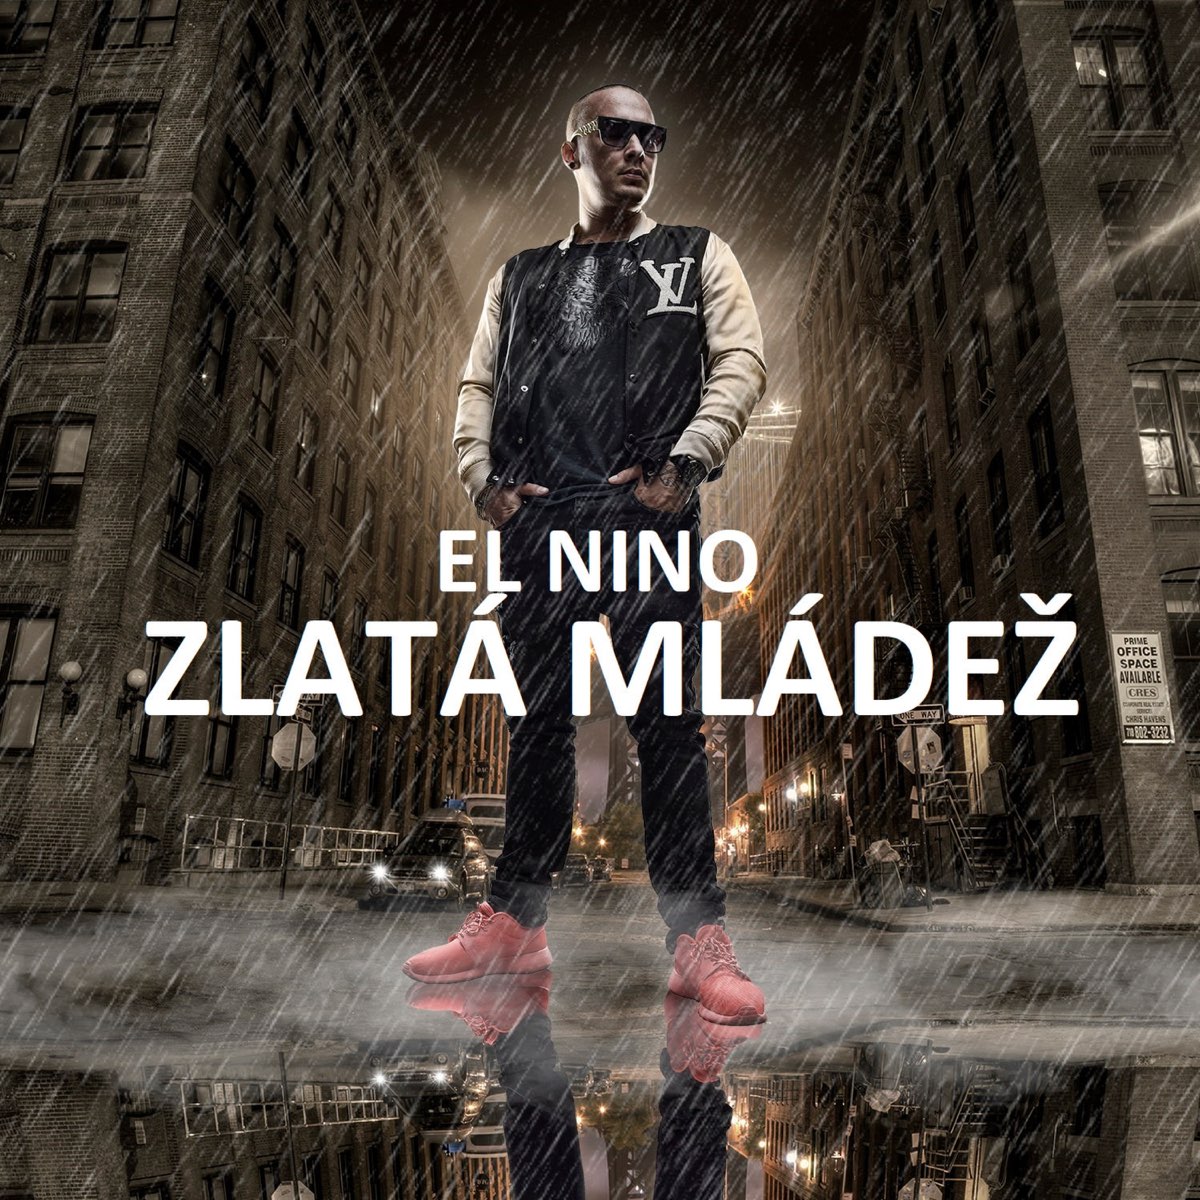 Zlatá mládež - Single by El Nino on Apple Music